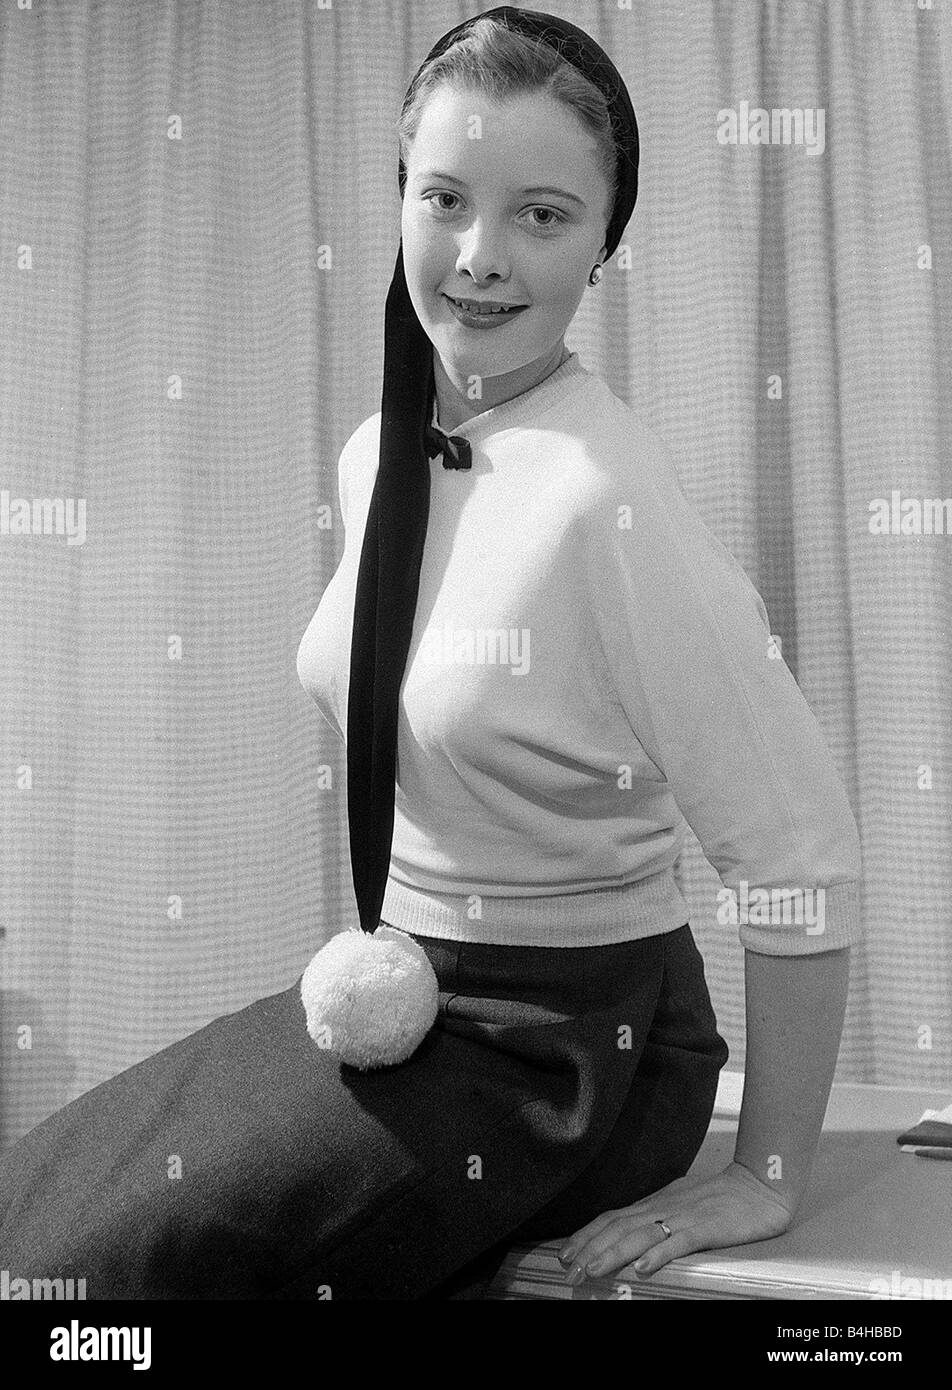 Film di star giugno Thorburn riceve un trattamento di bellezza al salone di Atkinsons su Bond Street a Londra Dicembre 1952 Foto Stock